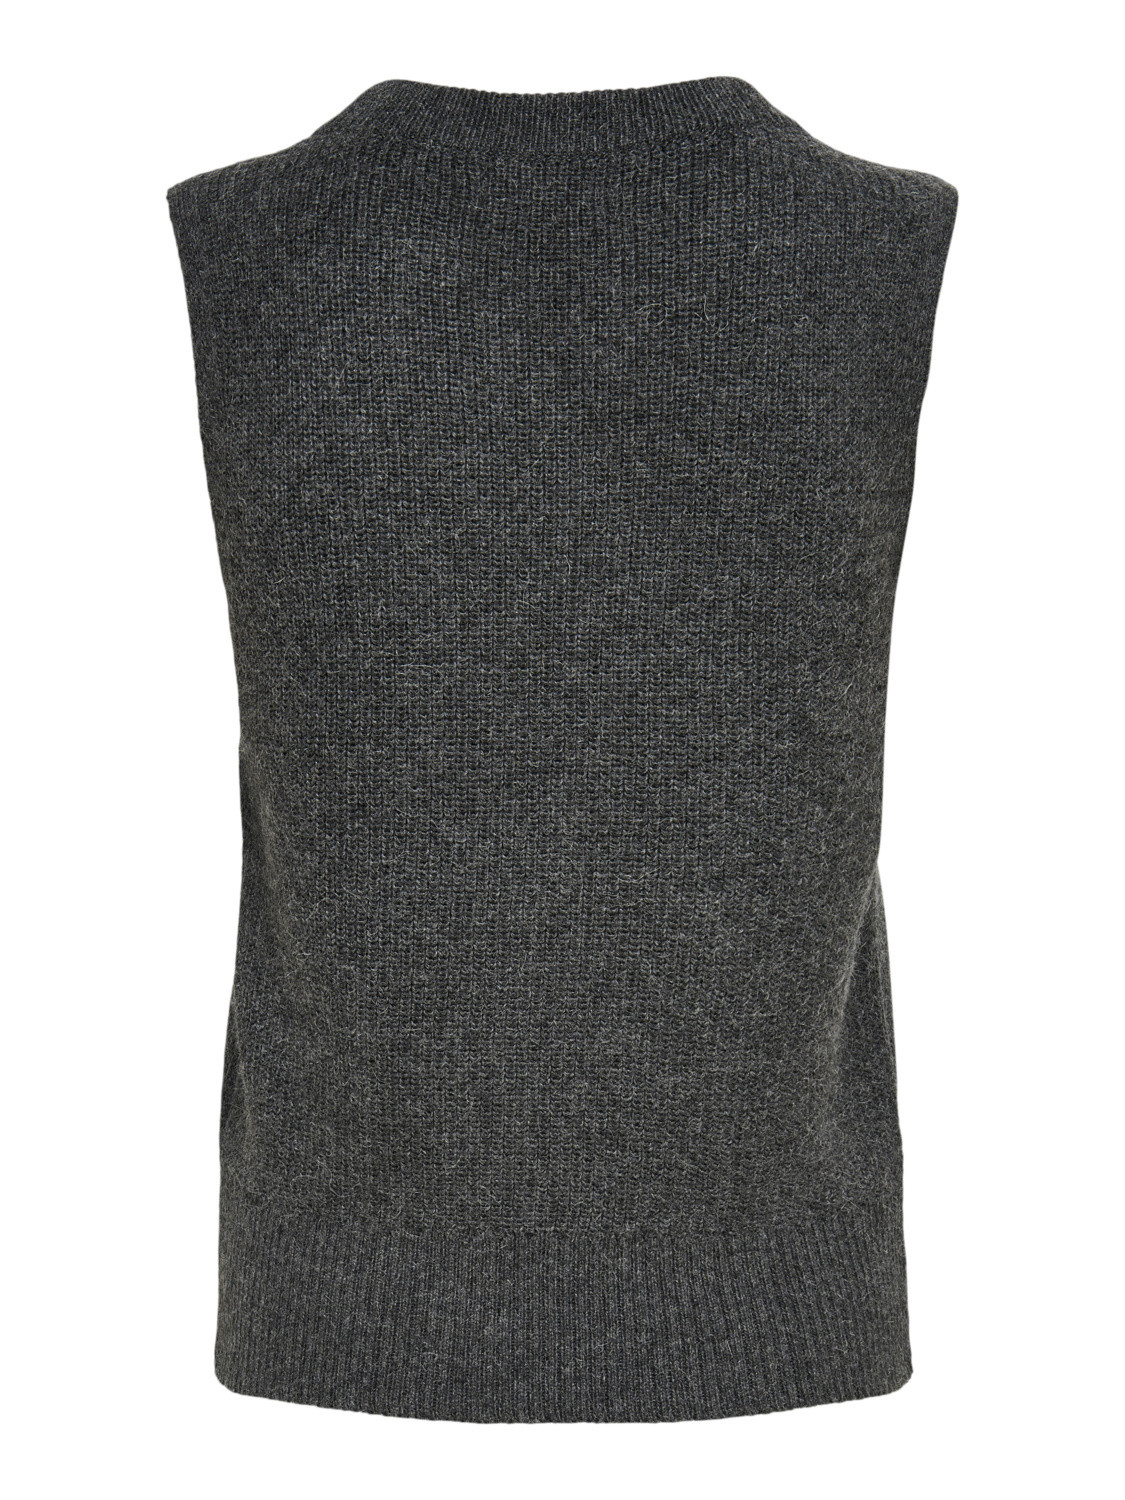 Vest, Grey, large image number 1